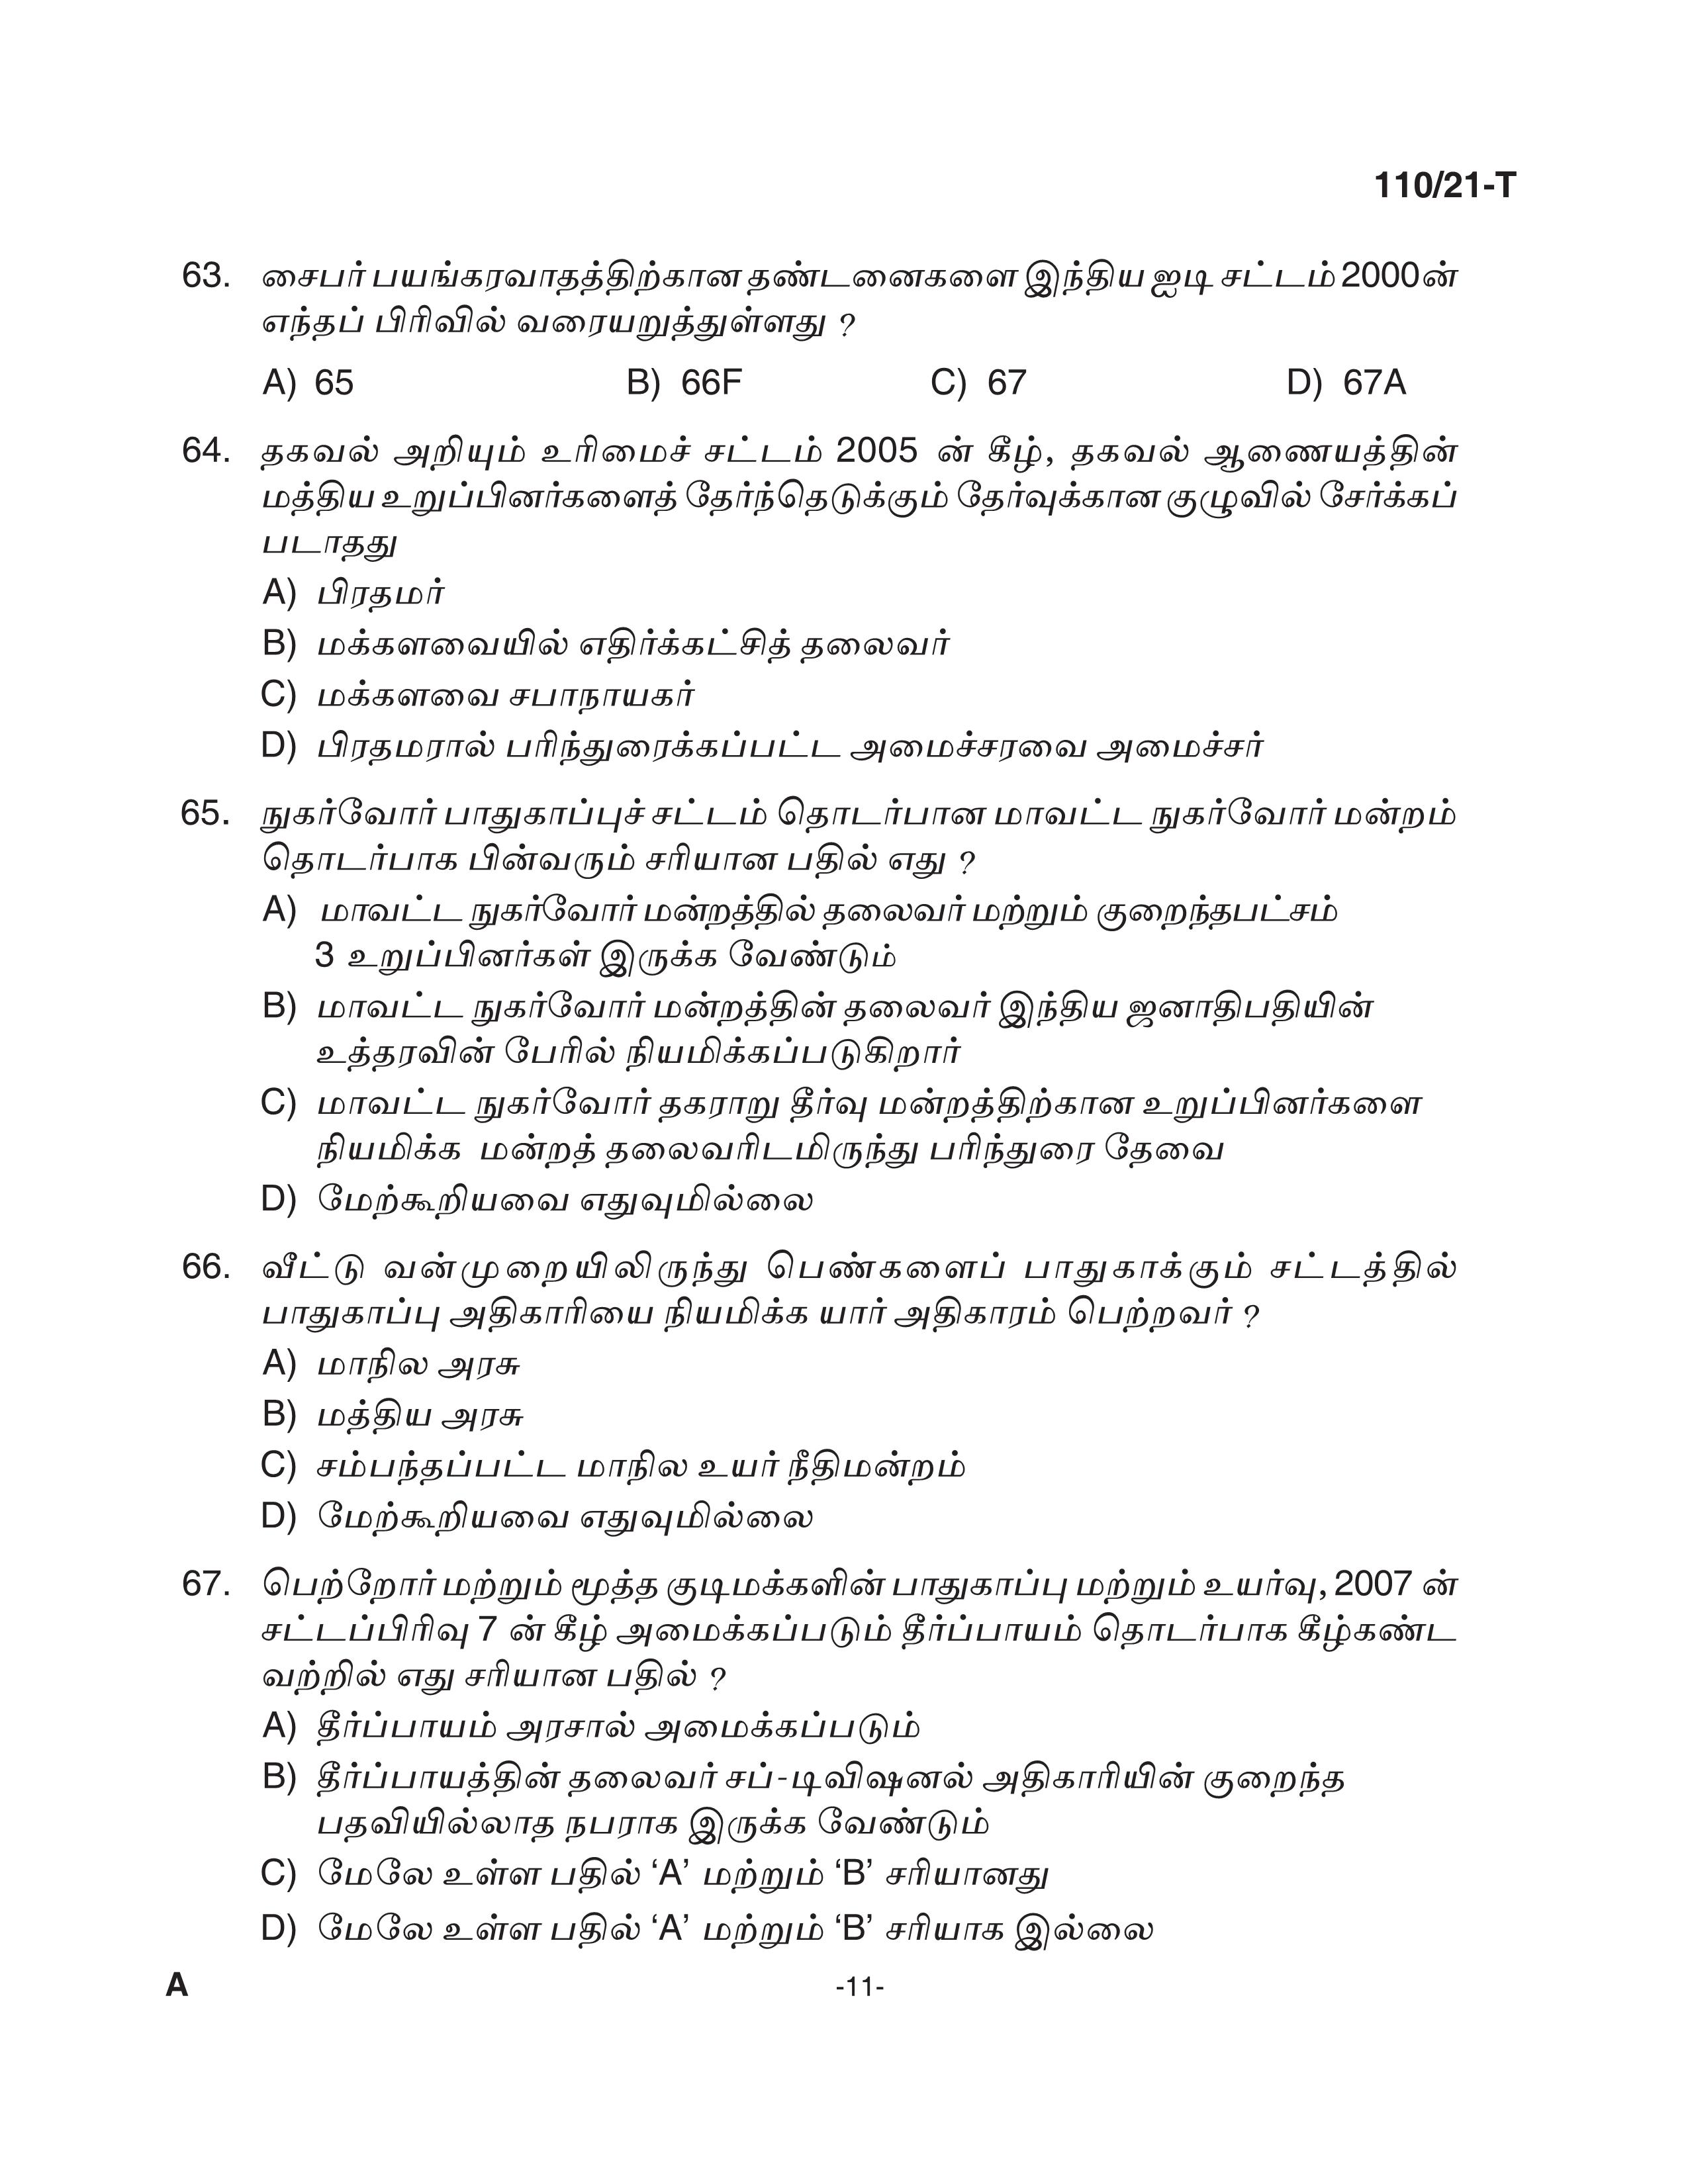 KPSC Assistant Grade II Sergeant Tamil Exam 2021 Code 1102021 T 10